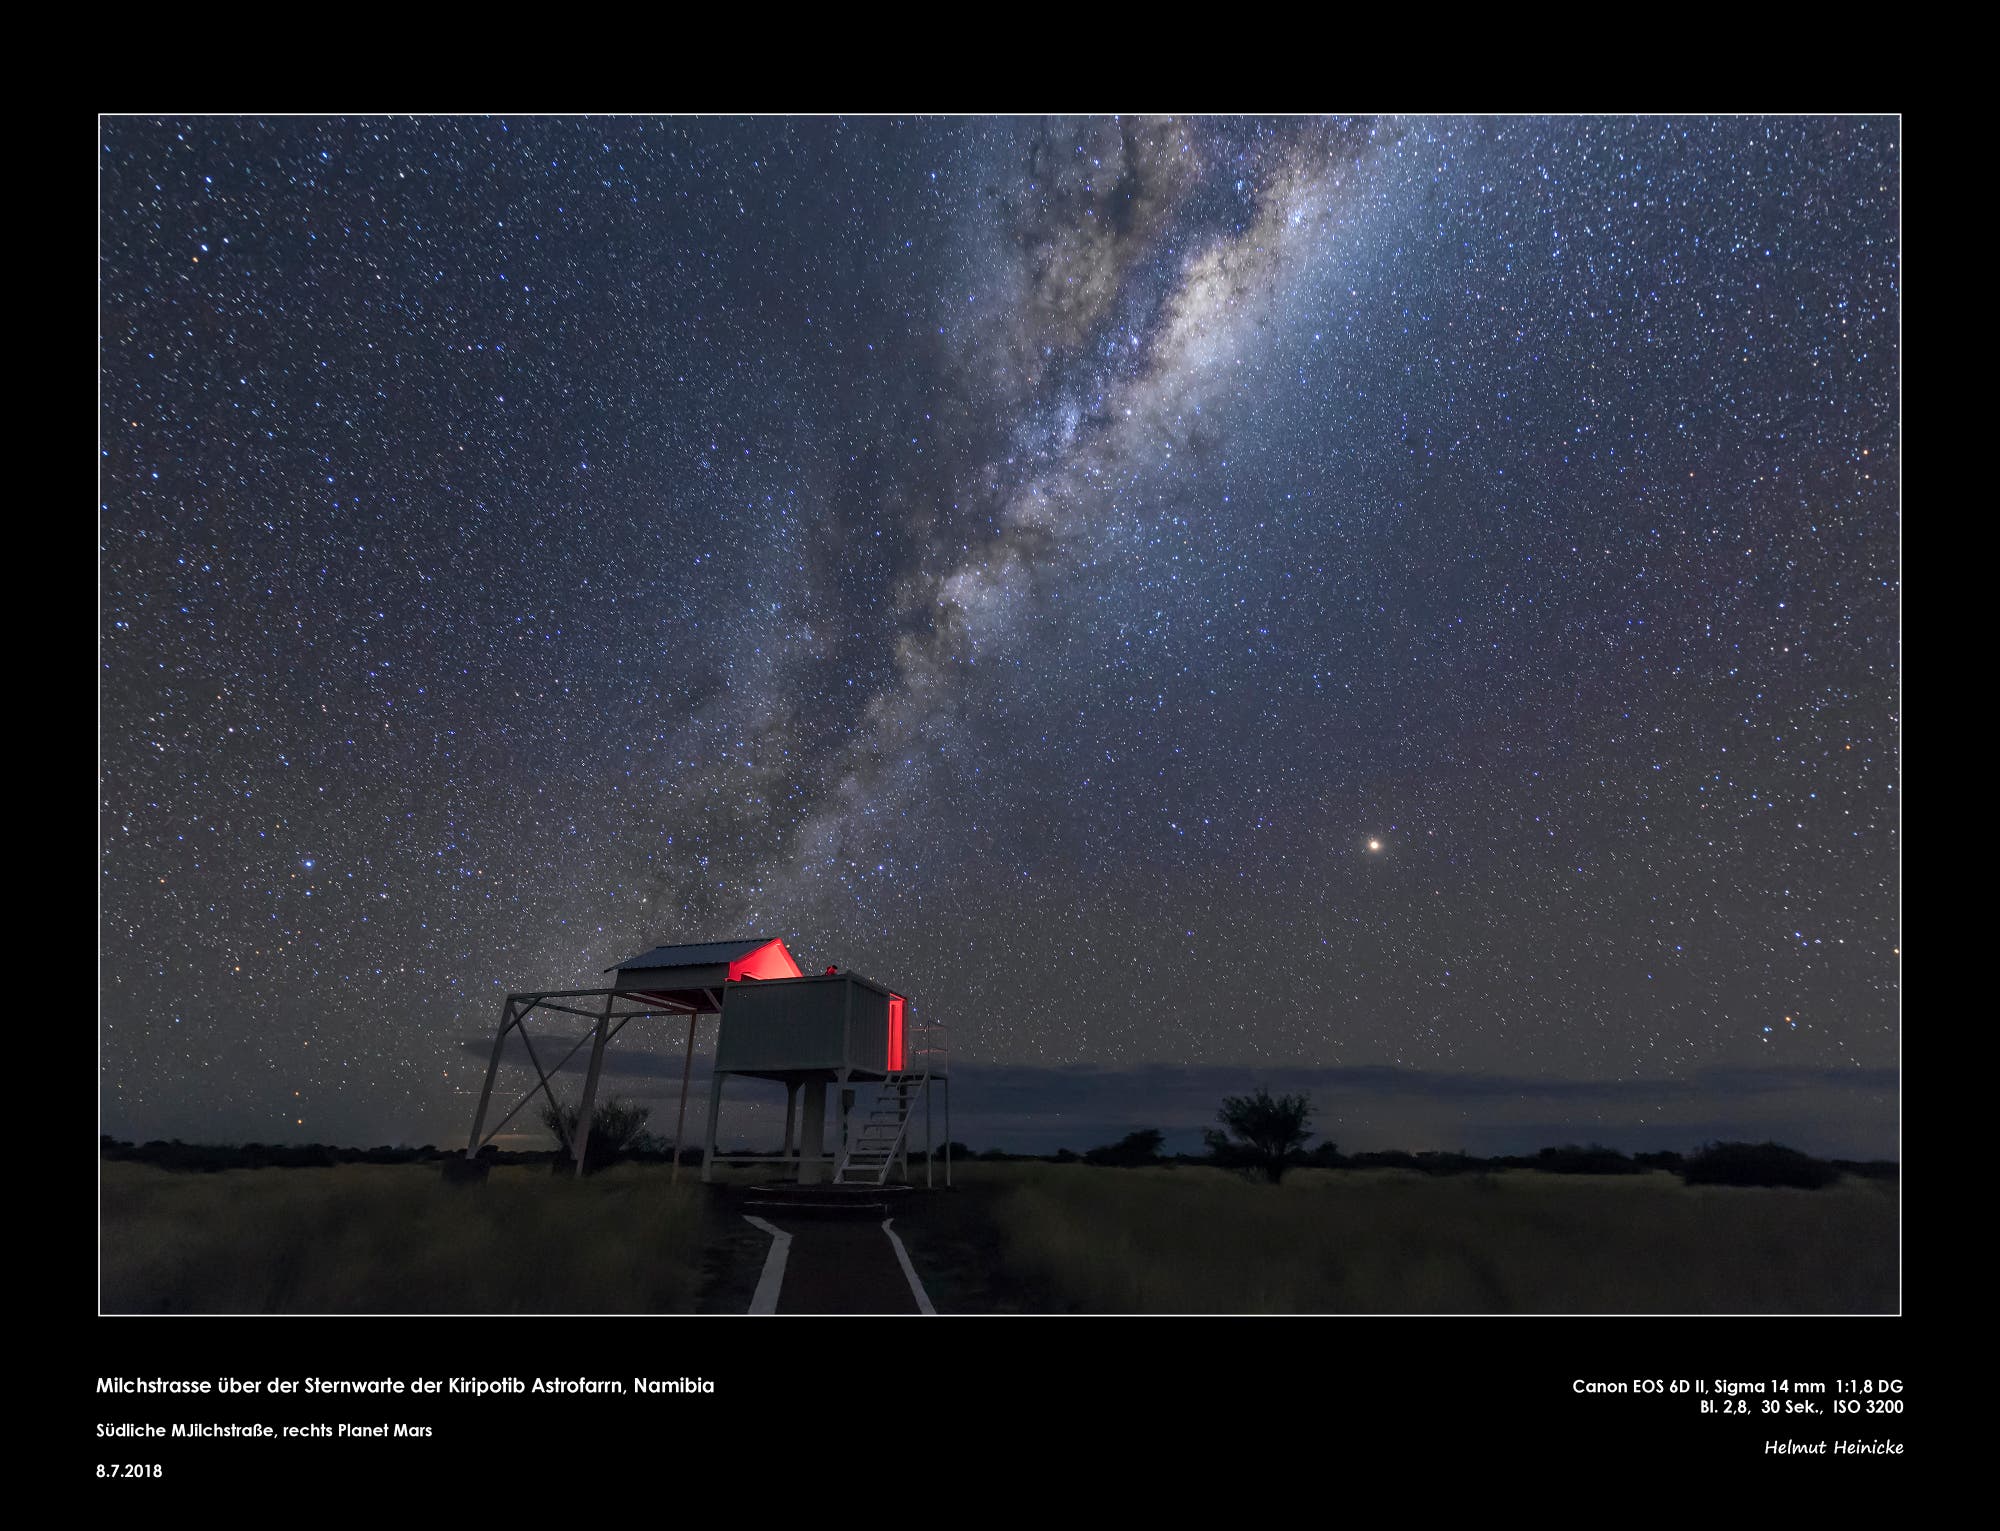 Milchstraße über der Sternwarte der Kiripotib Astrofarm, Namibia